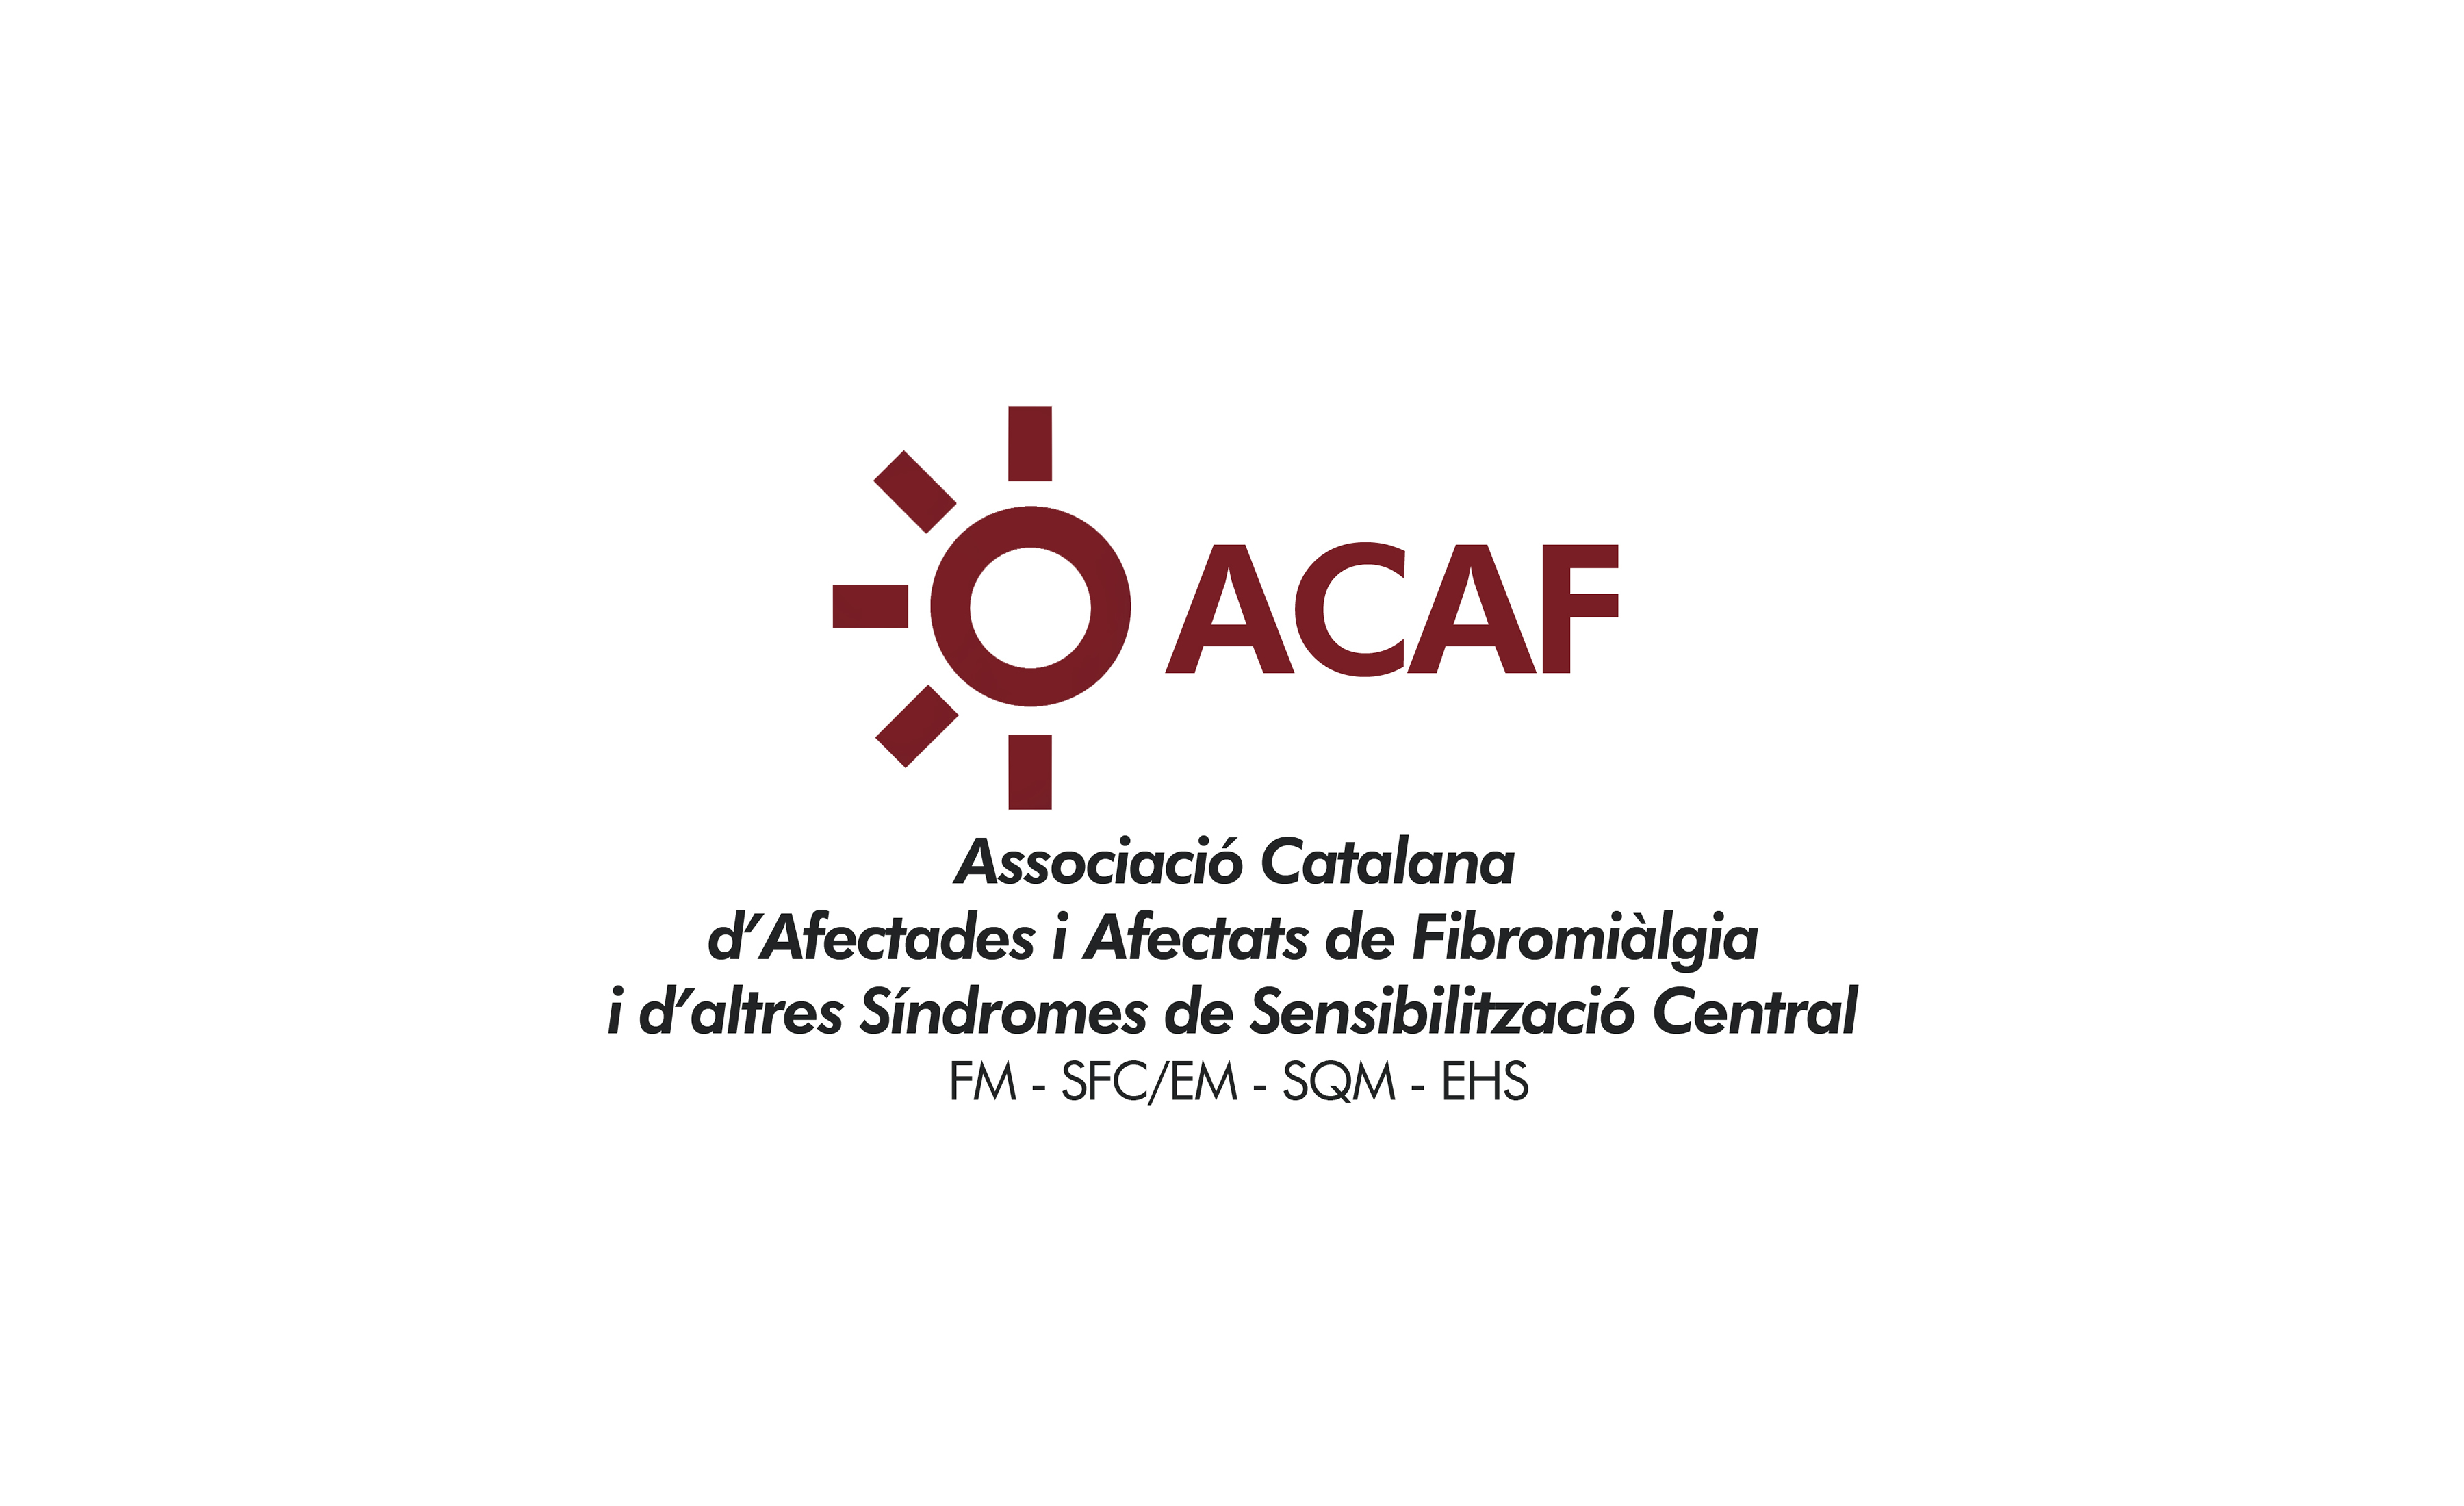 Avatar: ACAF - Associació Catalana d'Afectades i Afectats de Fibromiàlgia i d'altres SSC